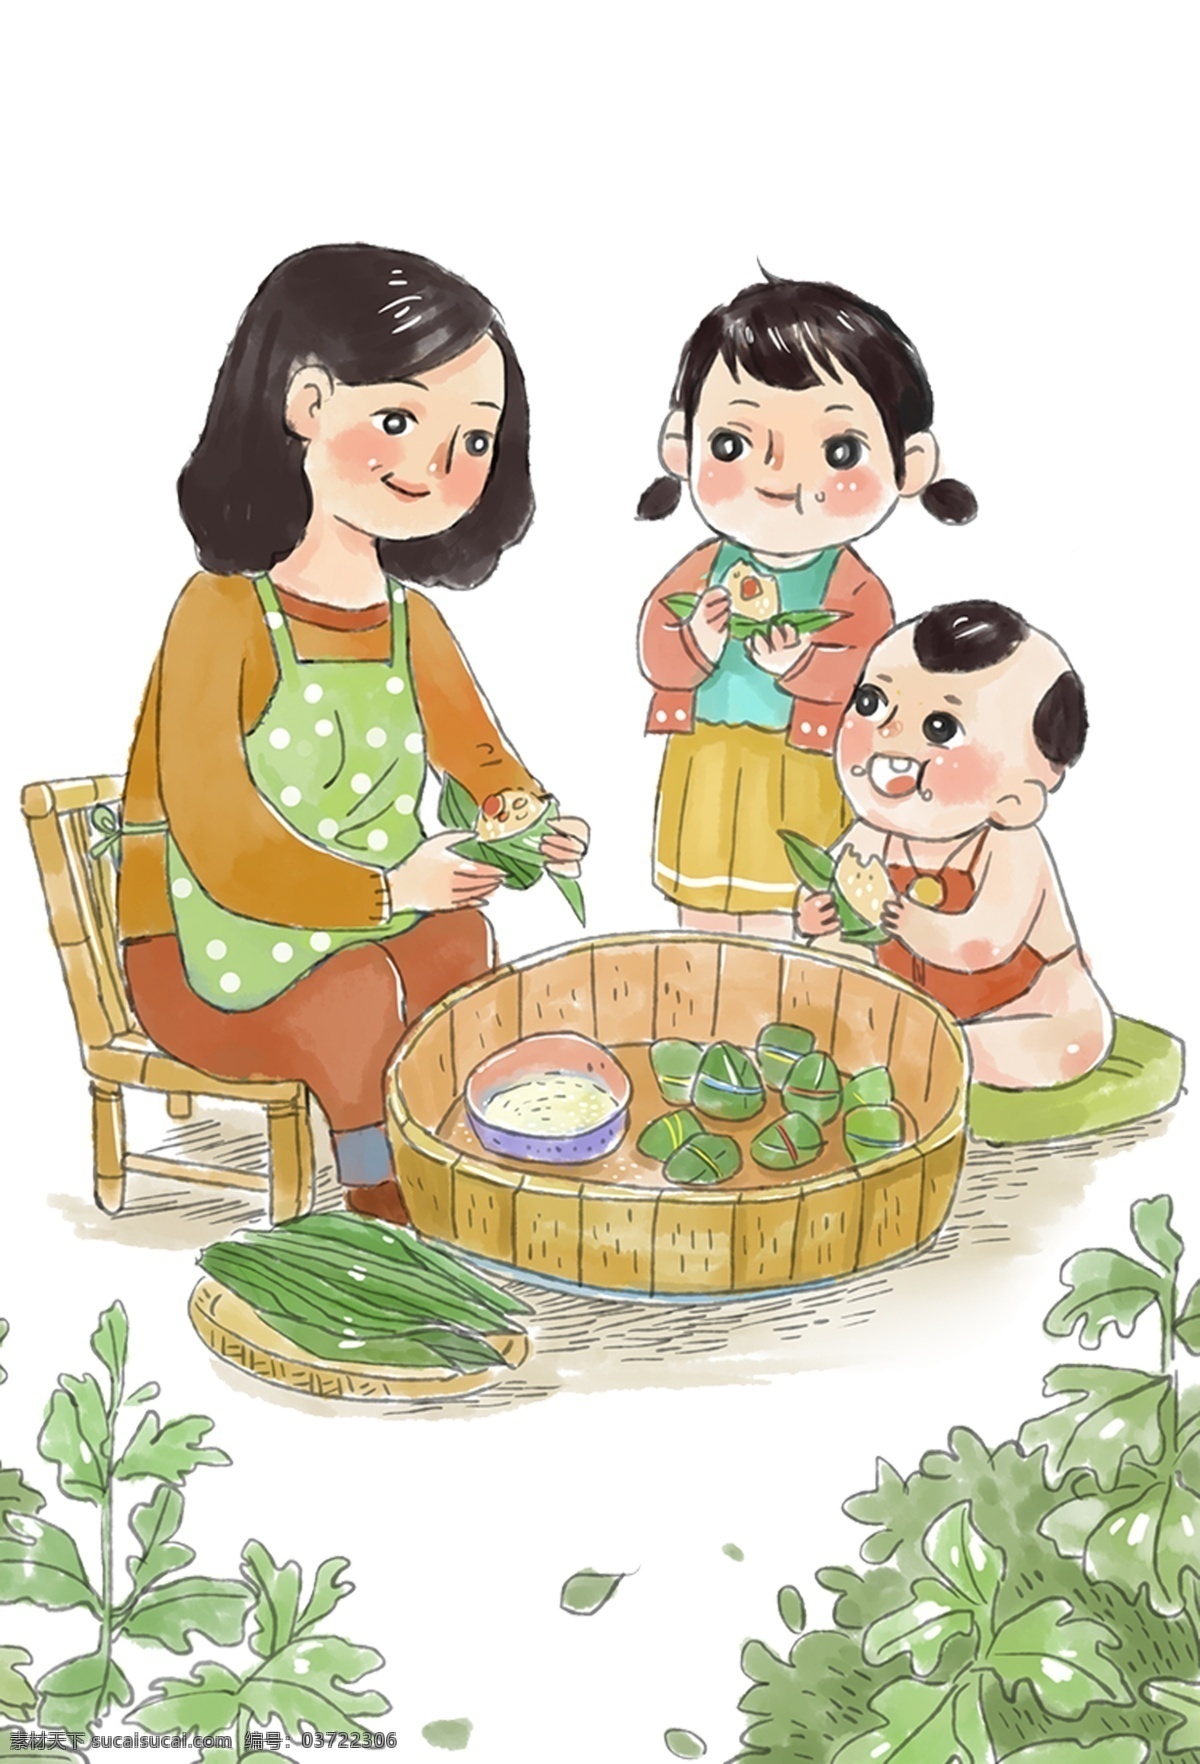 传统 端午节 风俗 插画 元素 童年回忆 包粽子 卡通 民俗风俗 文化民俗